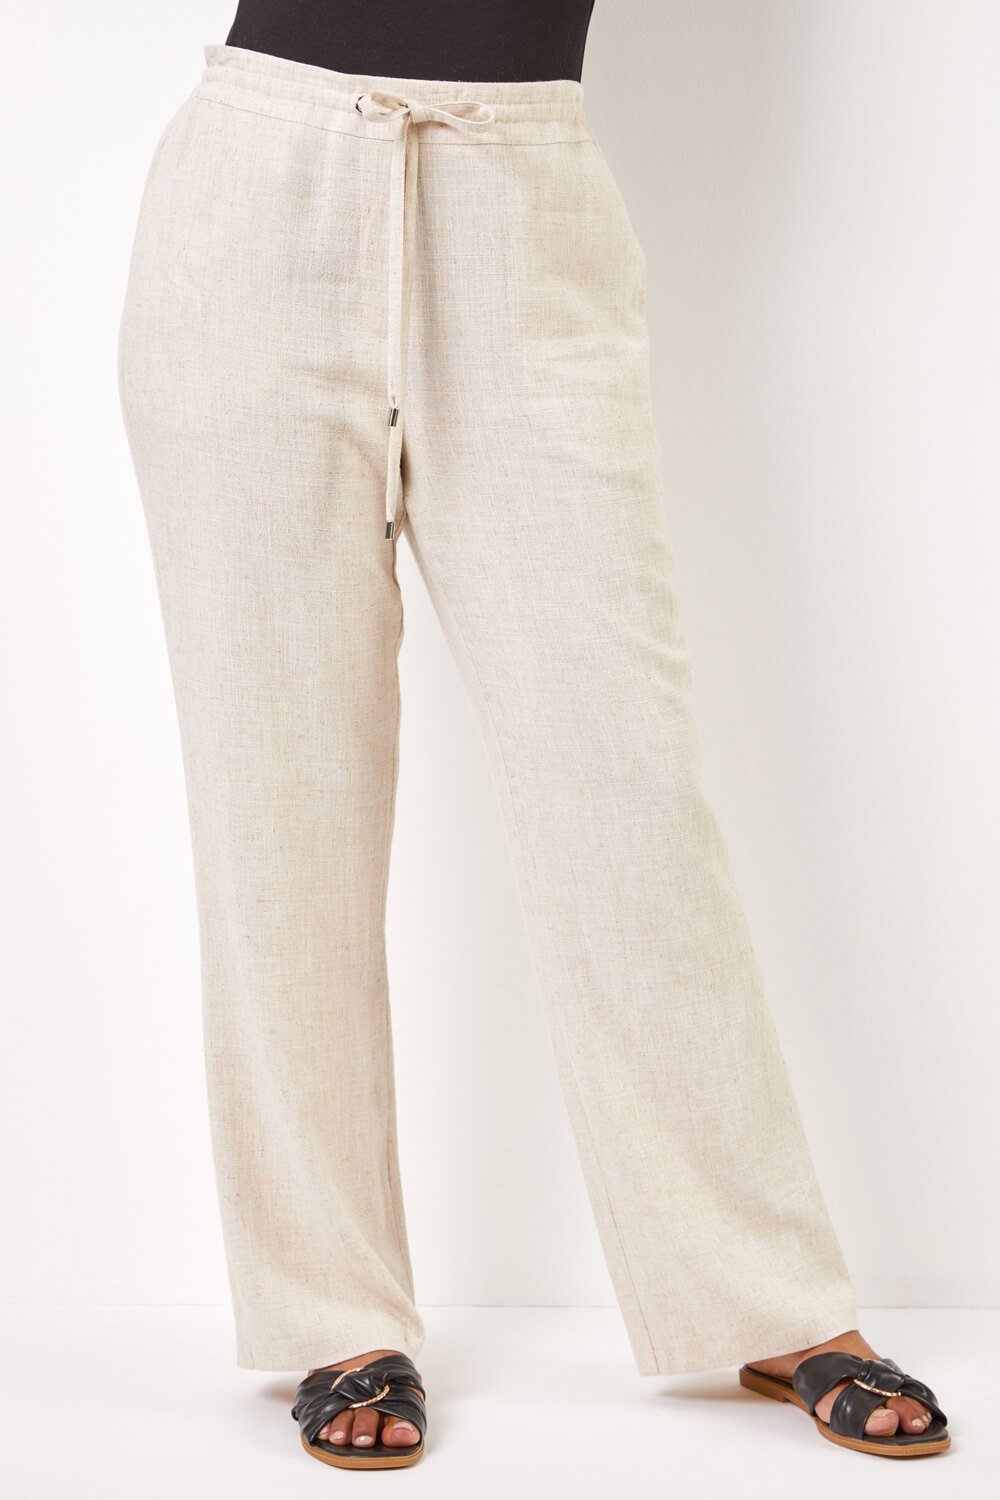 Buy Women's Linen Cotton Semi-Formal Wear Regular Fit Pants|Cottonworld